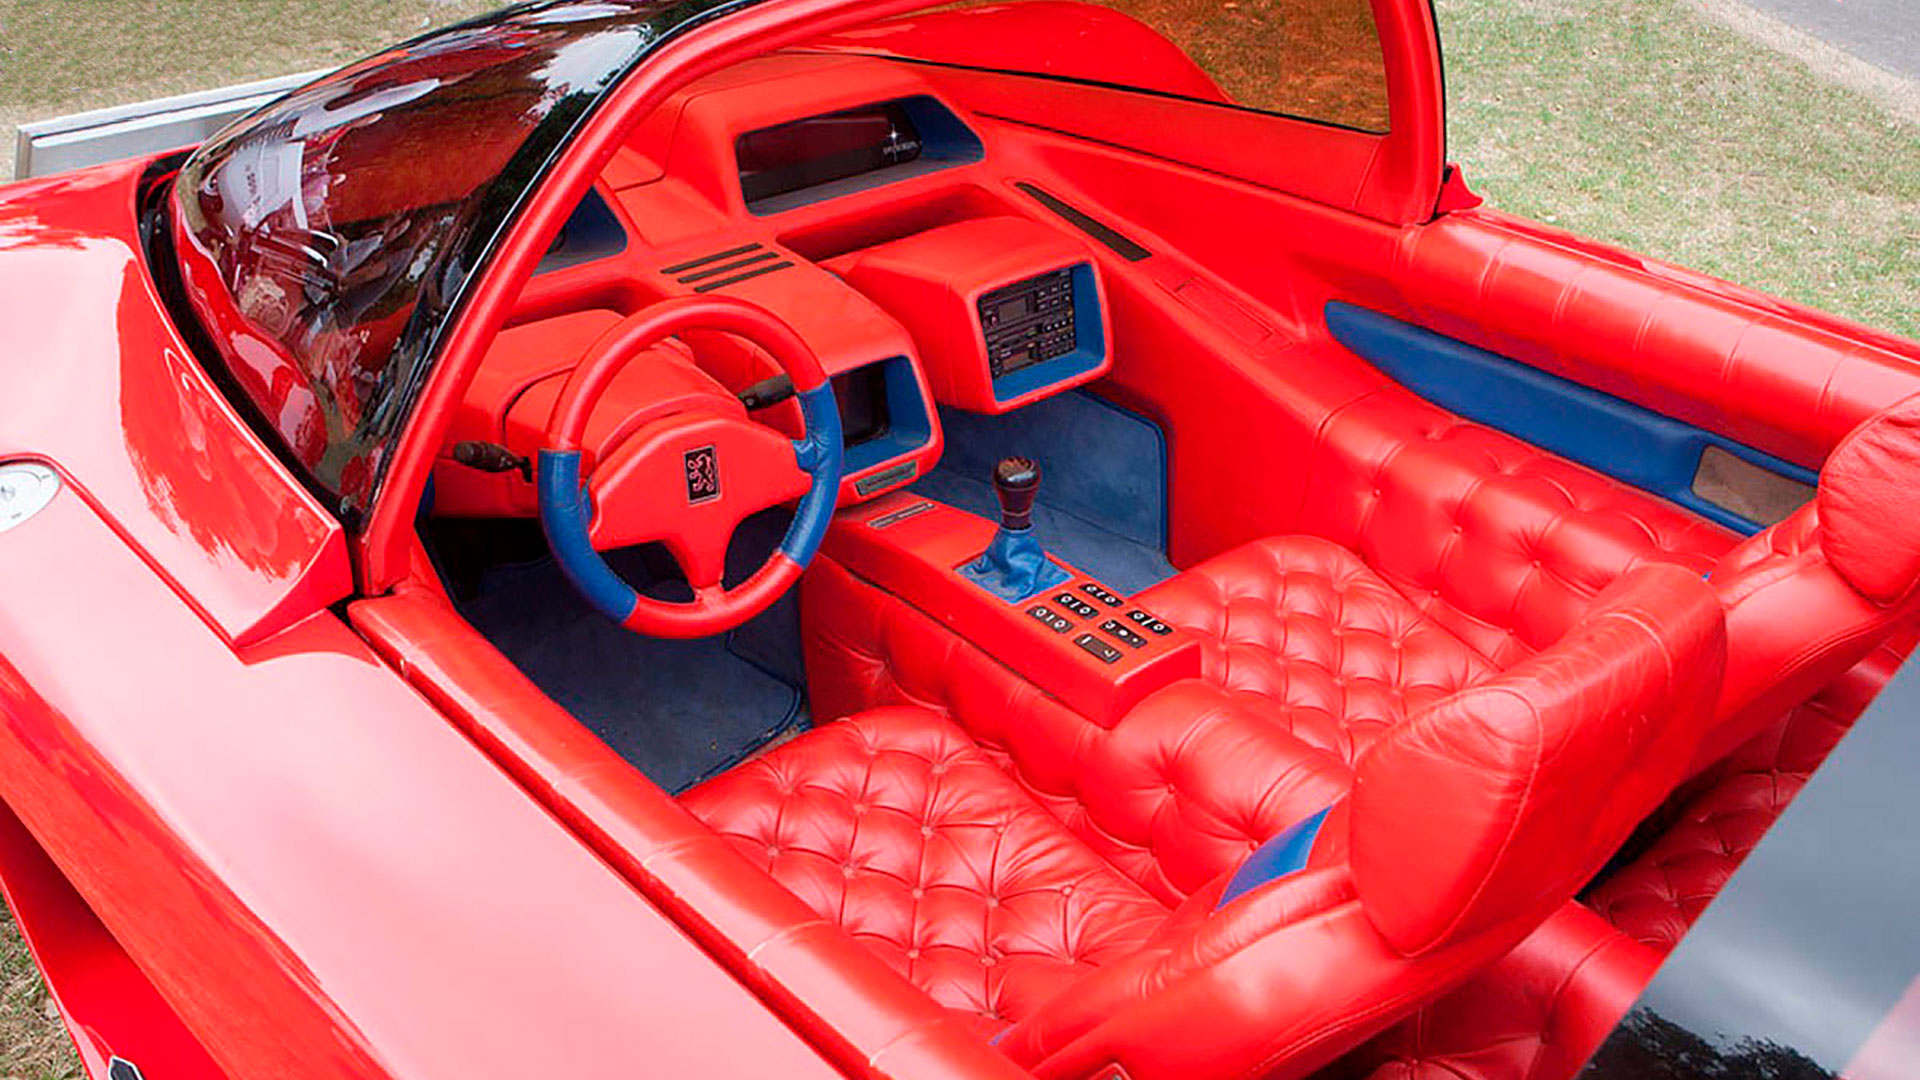 En 1986, Peugeot desarrollo el Próxima Concept con un diseño deportivo y el color rojo como predominante absoluto. Otro camino que luego se continuó en varios modelos de la marca